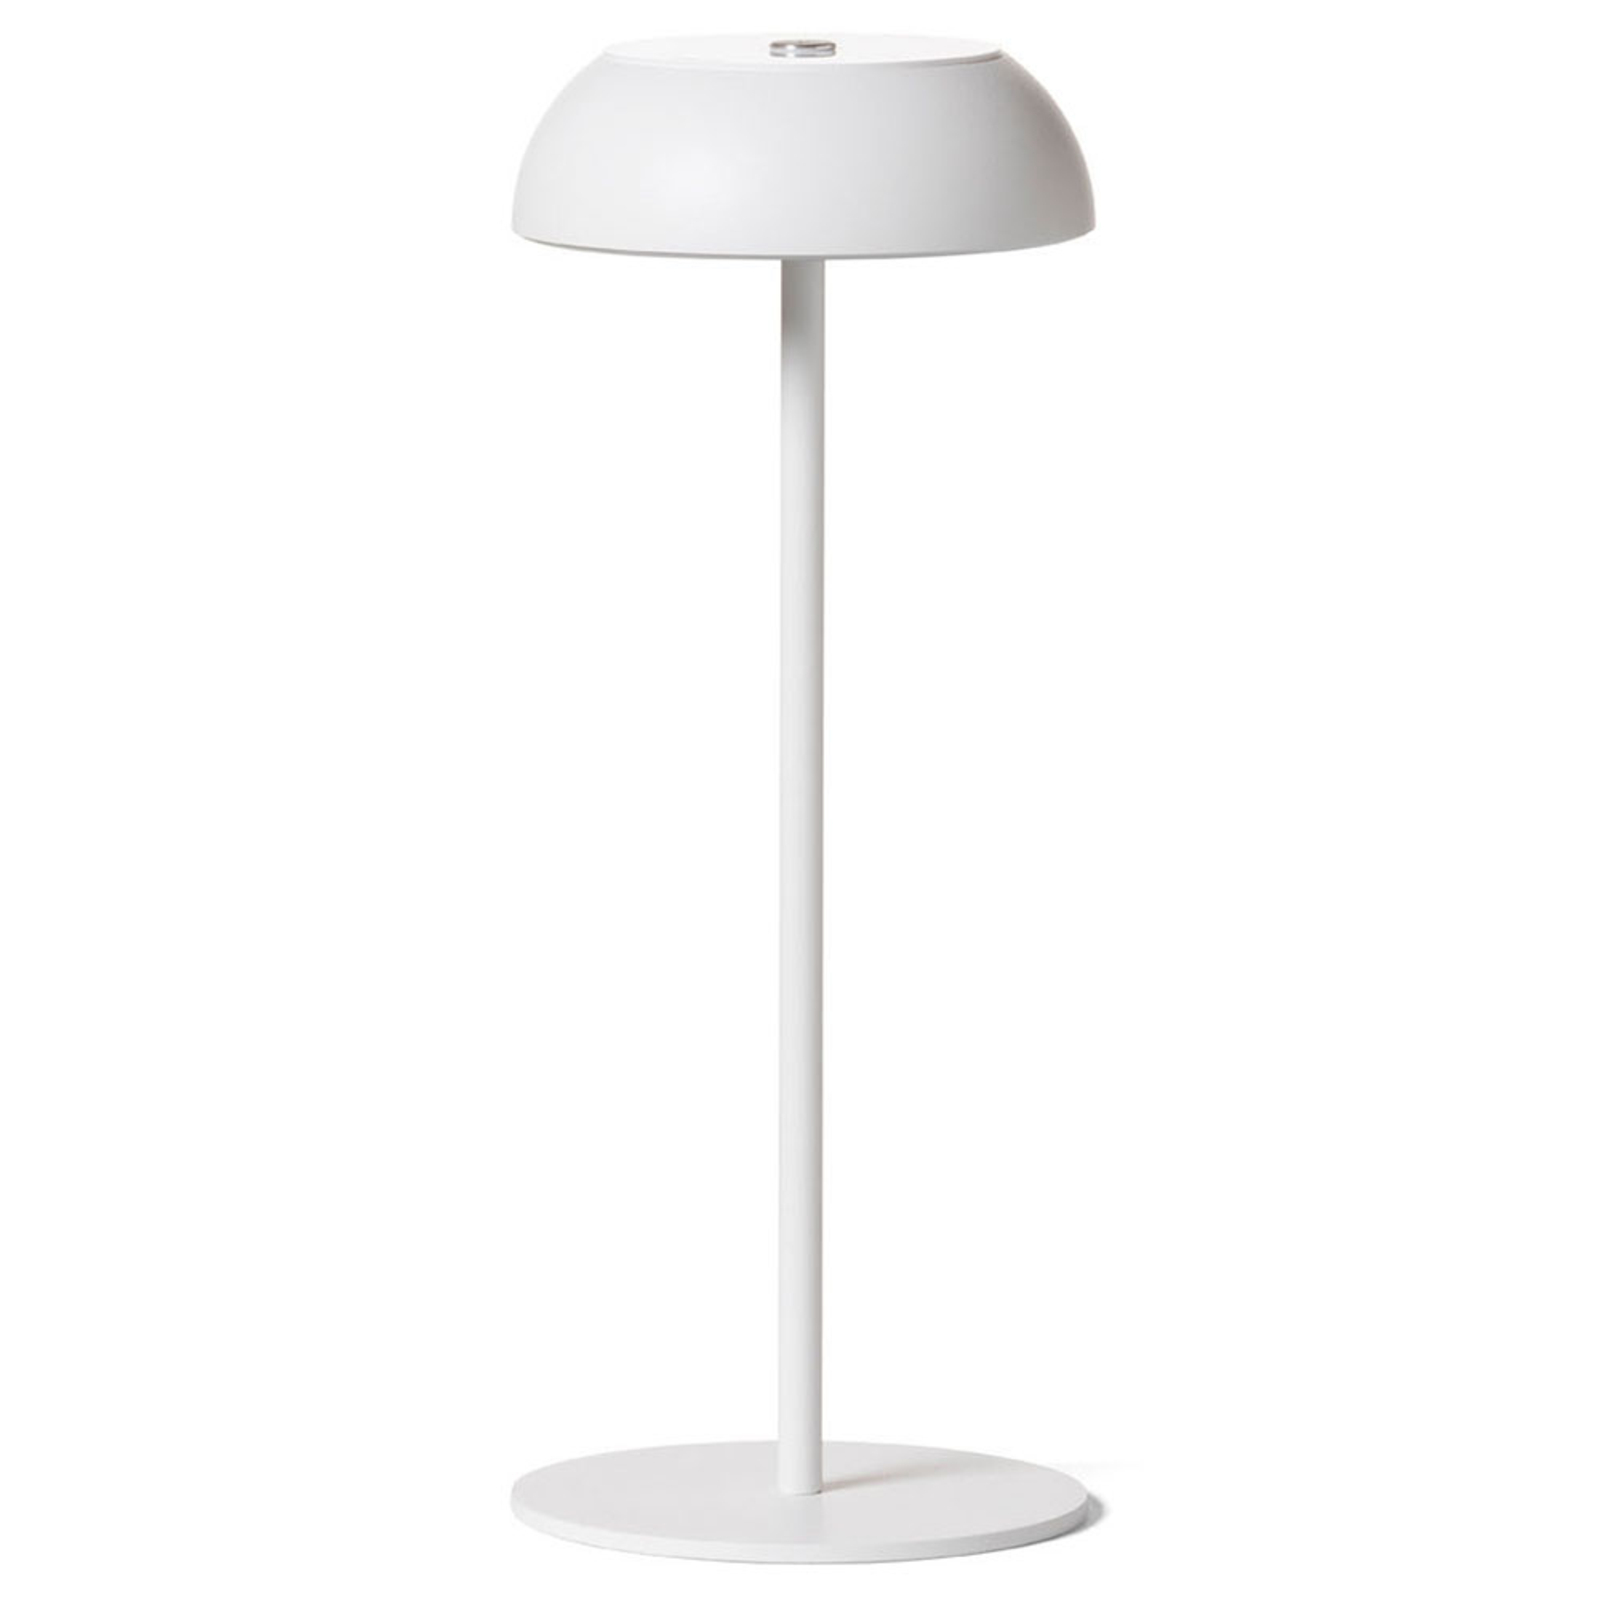 Axolight Float LED designer table lamp, white